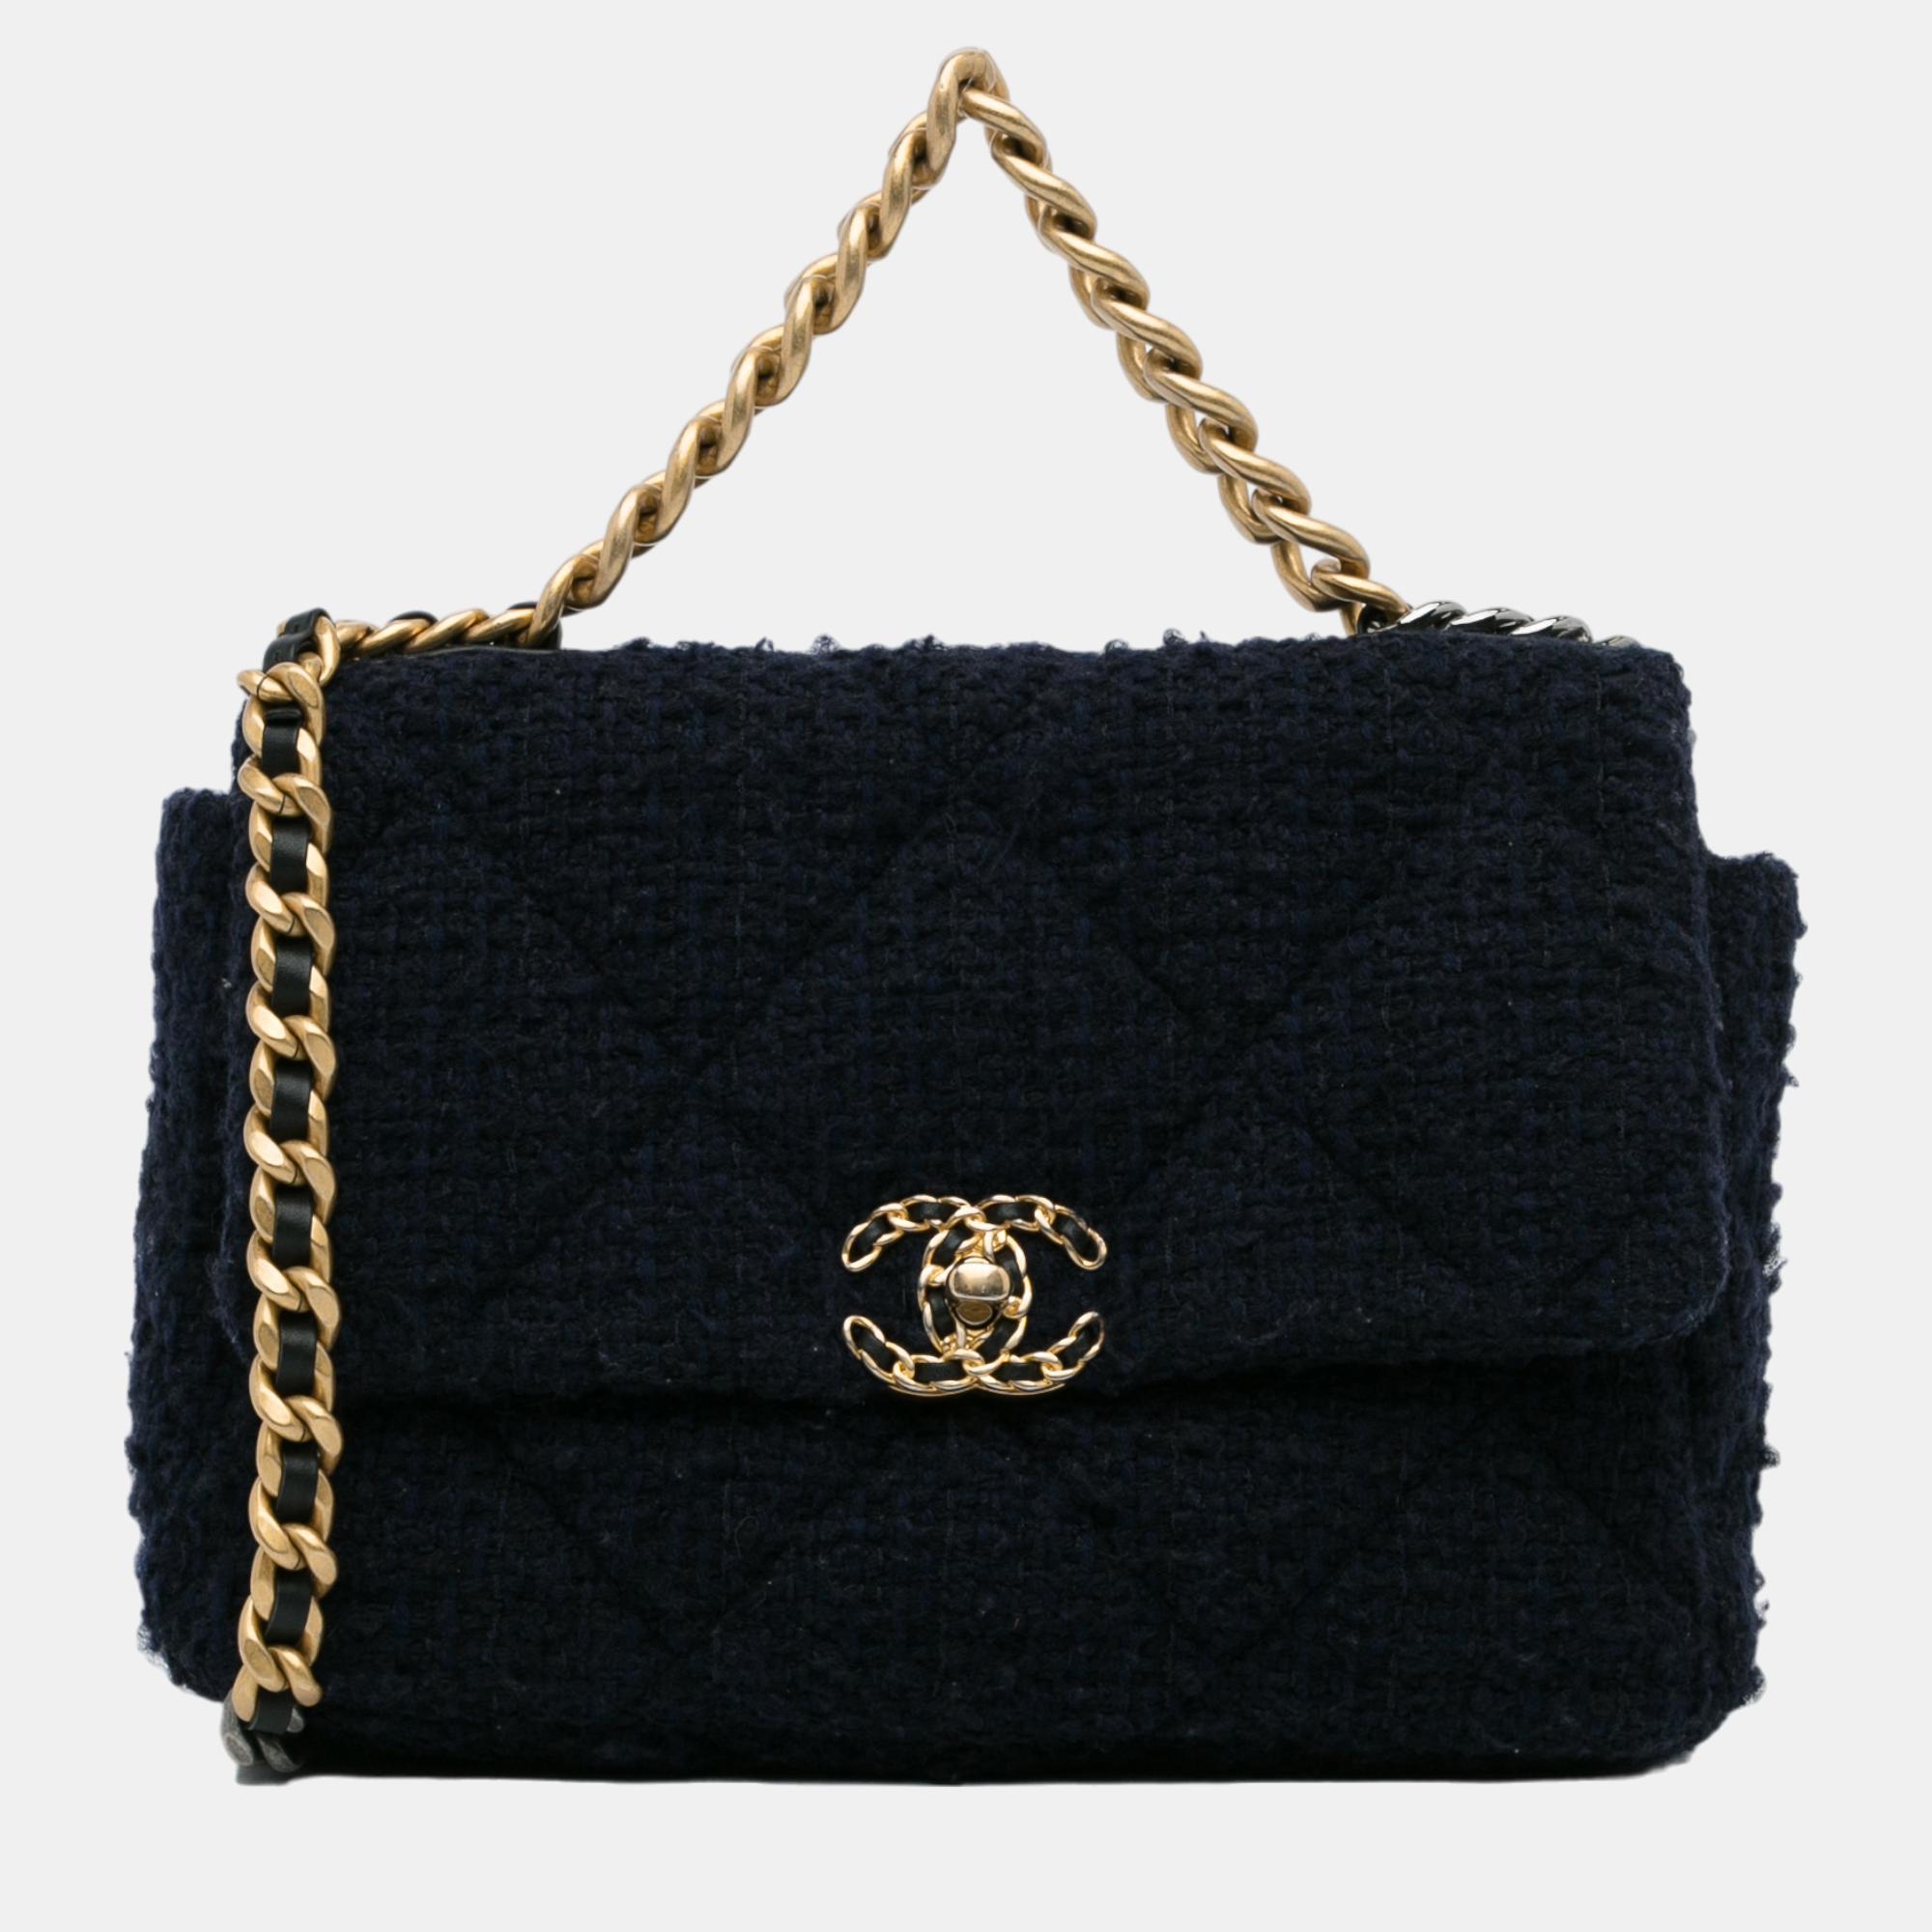 Chanel Black Large Tweed 19 Flap Bag